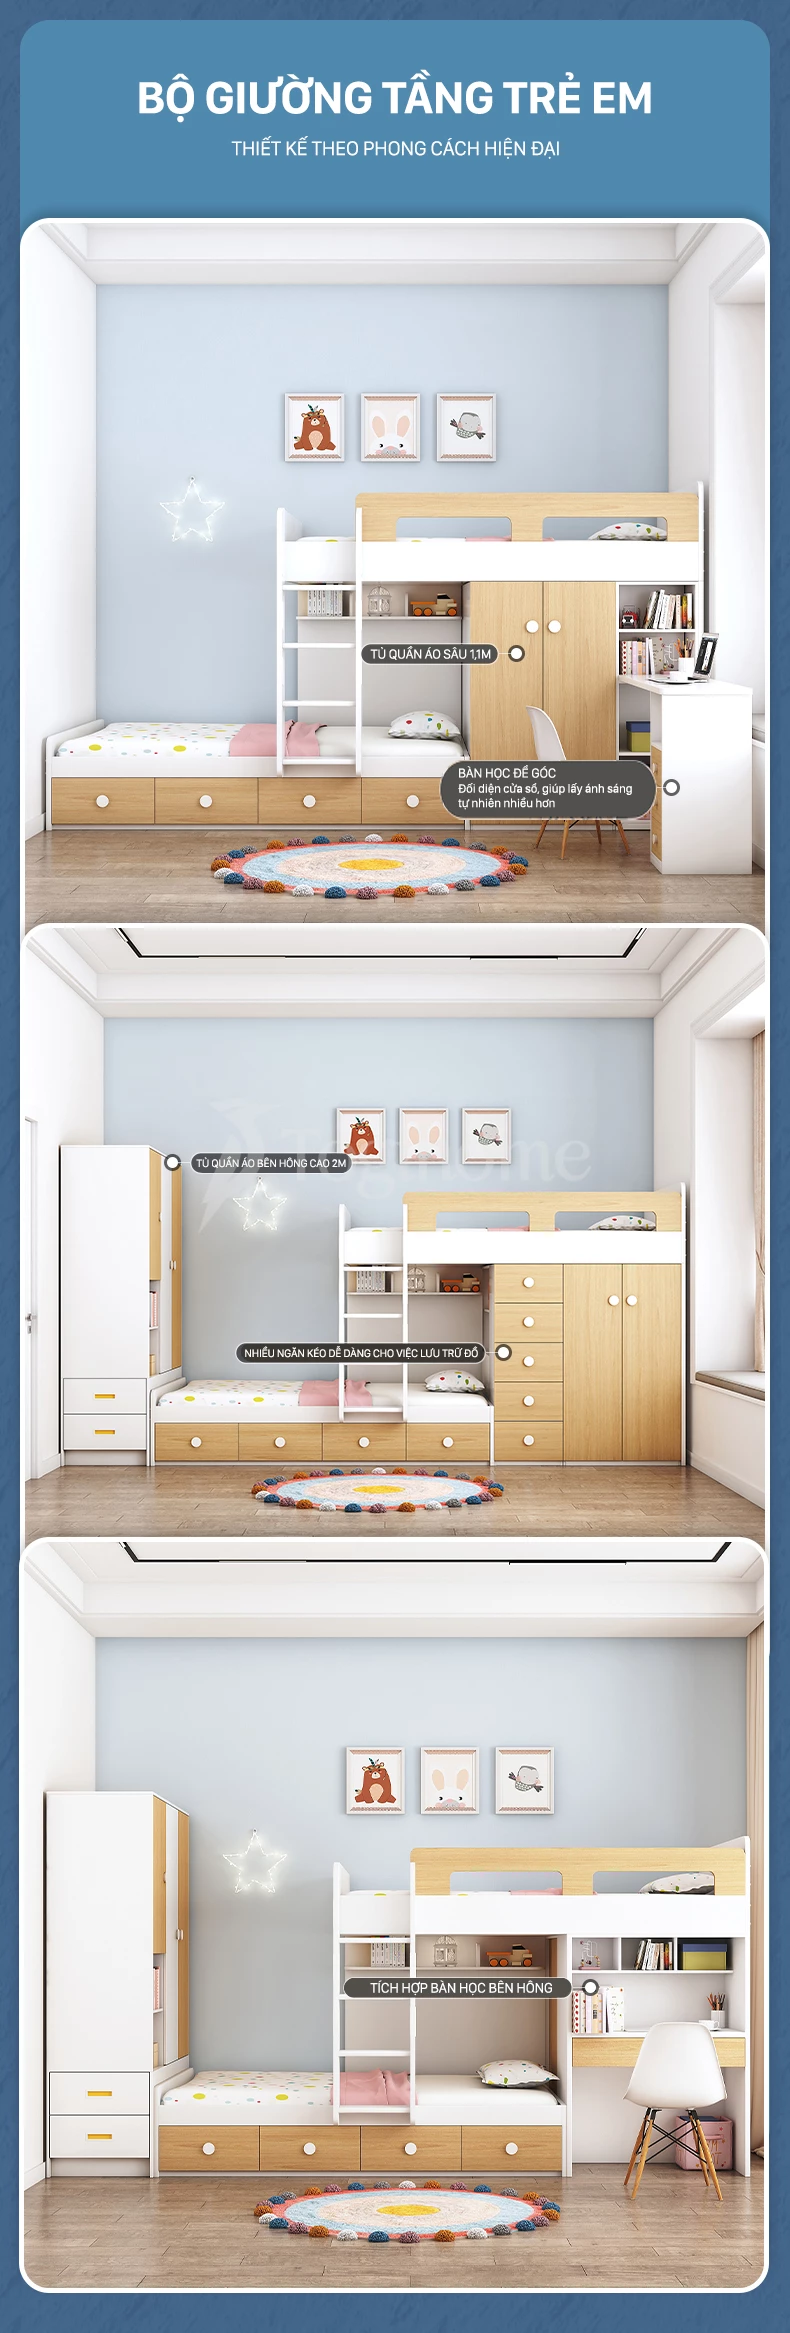 Chi tiết các bộ phận nội thất giường ngủ trẻ em GTE010 kết hợp bàn học và tủ quần áo cao cấp, thiết kế đa năng